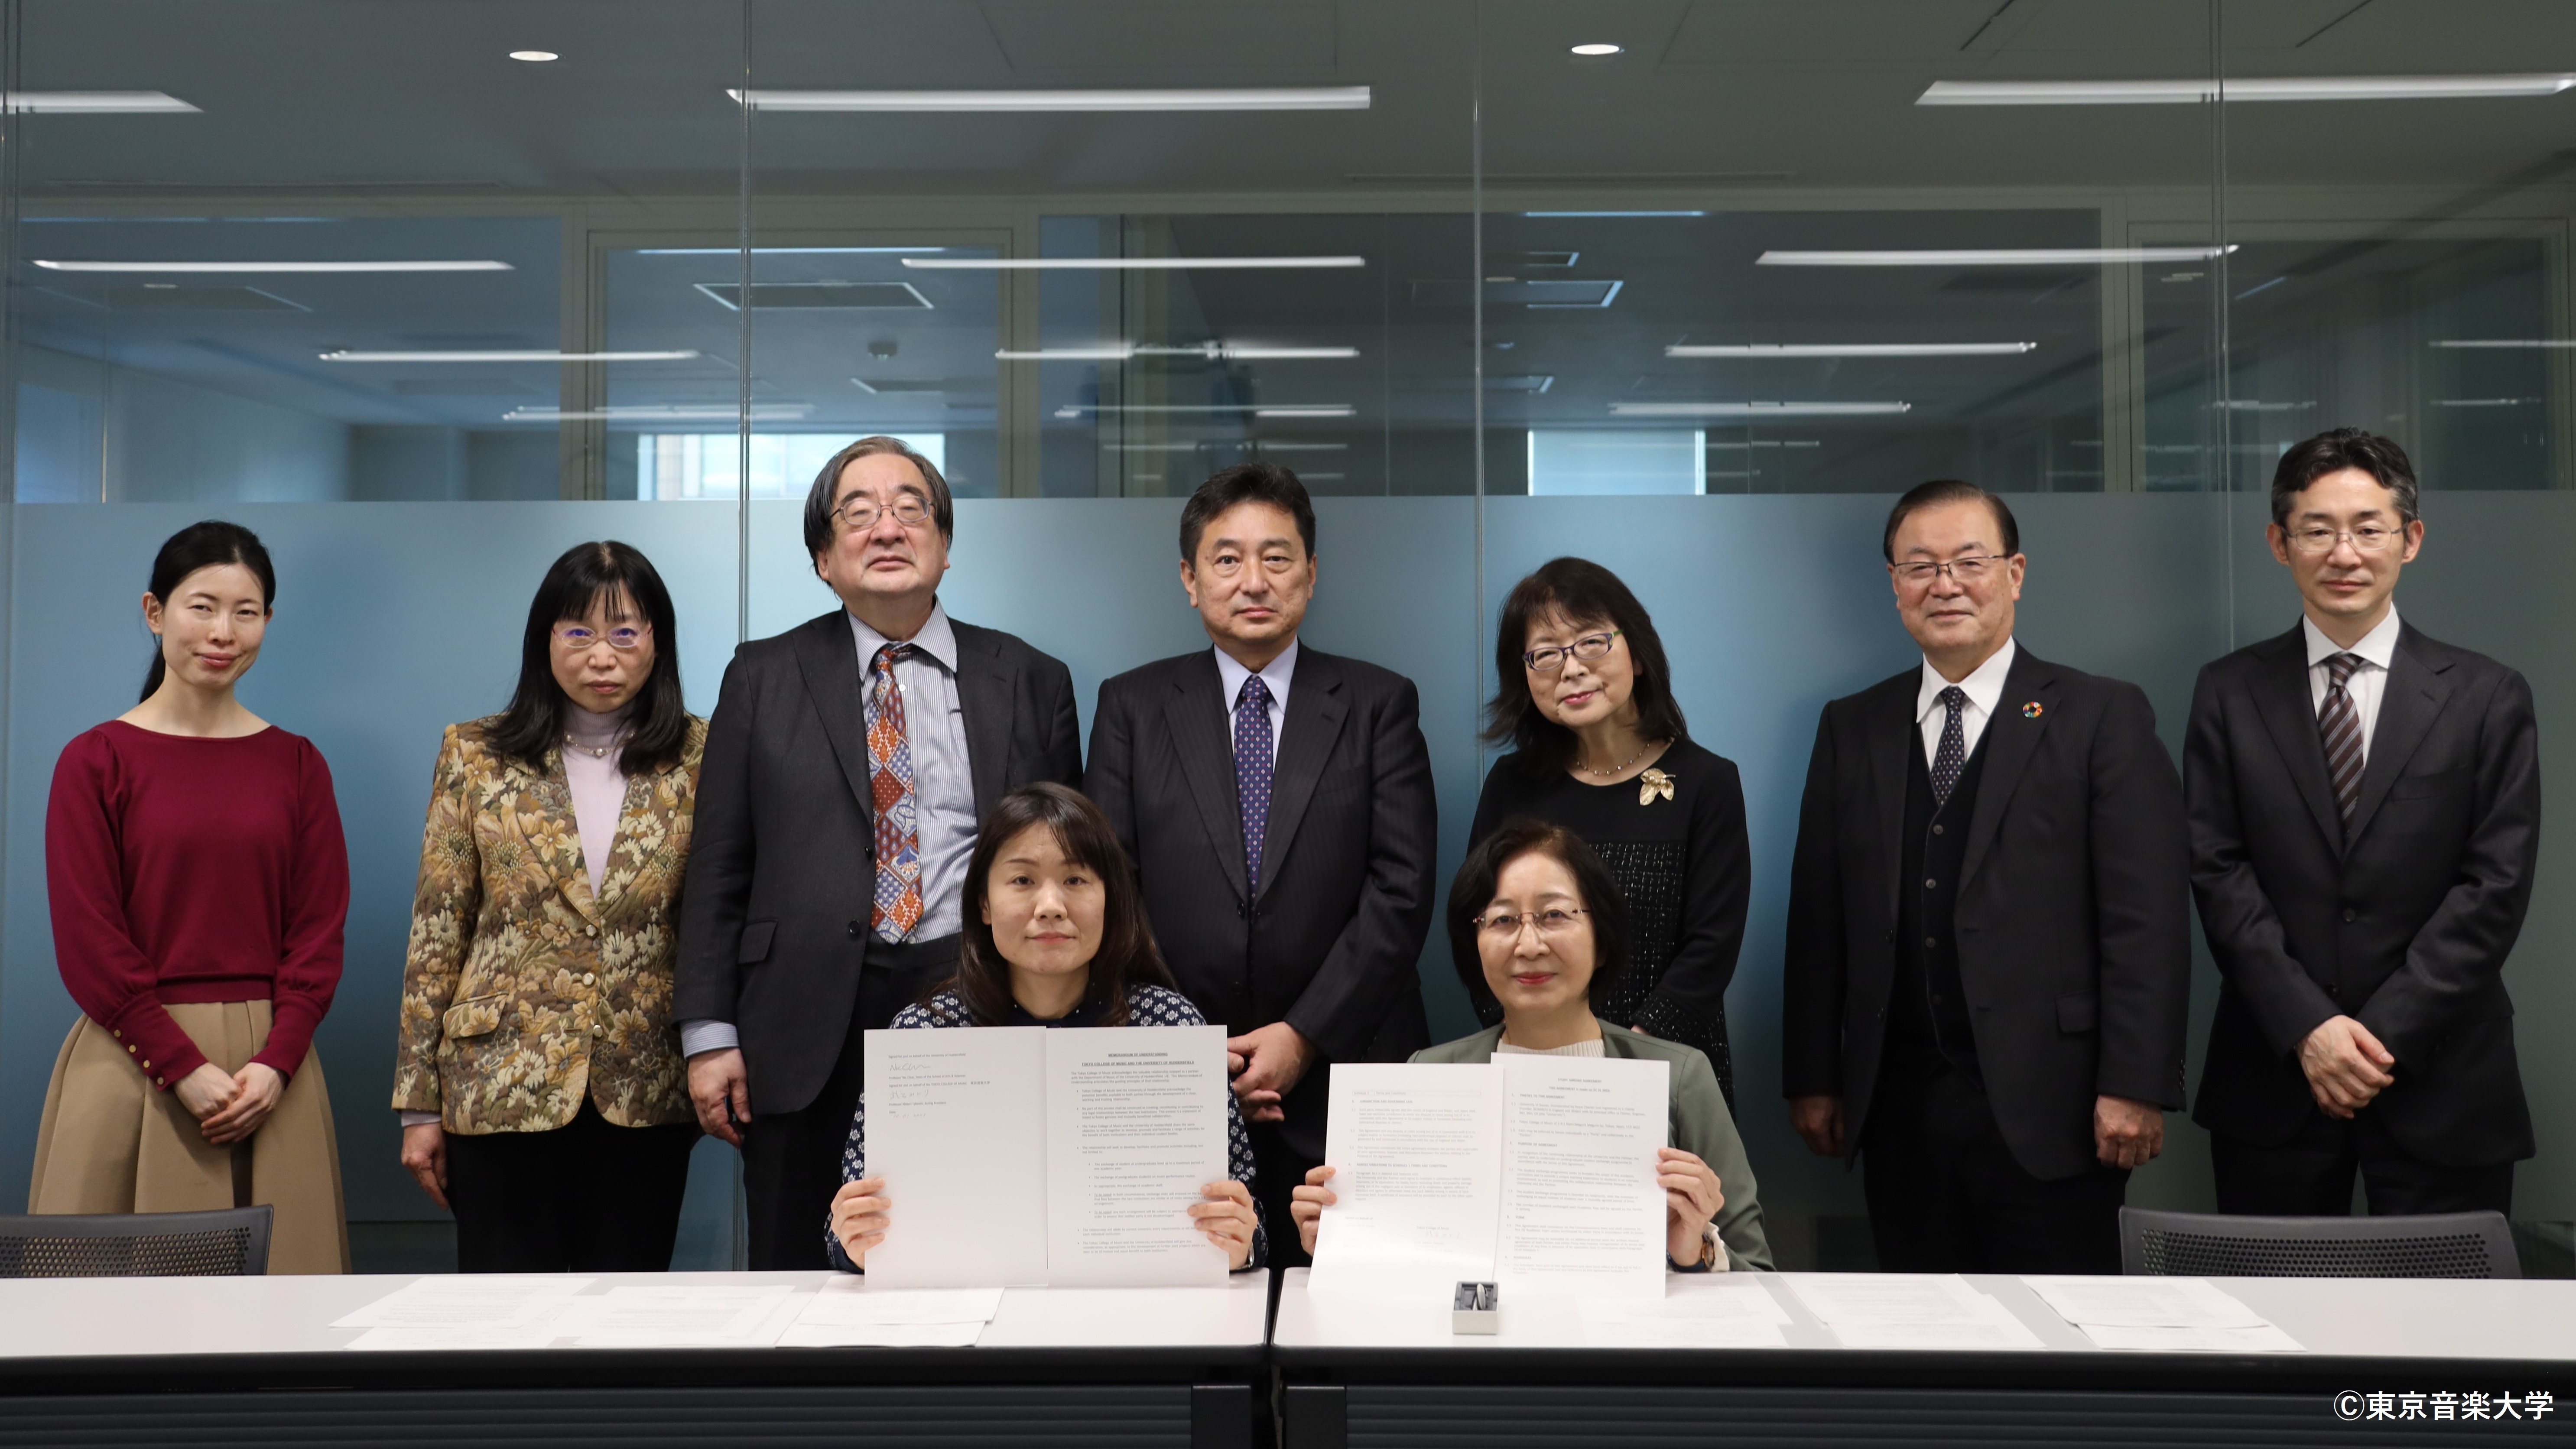 東京音楽大学、英国サセックス大学との海外留学協定、および、ハダースフィールド大学と大学間における学術交流協定の調印式が行われました